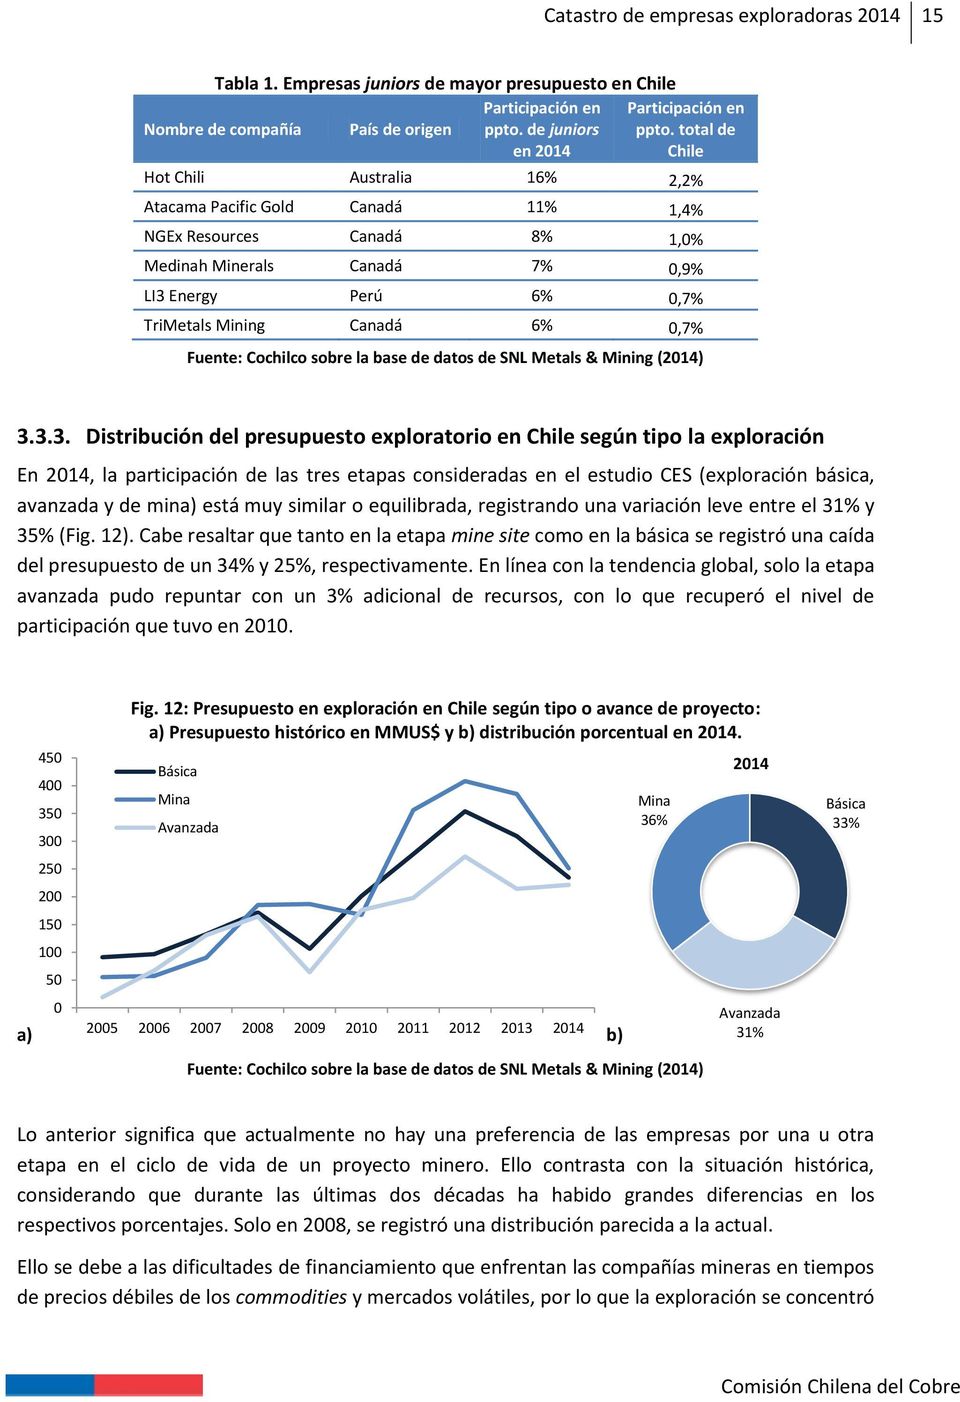 Fuente: Cochilco sobre la base de datos de SNL Metals & Mining (2014) 3.